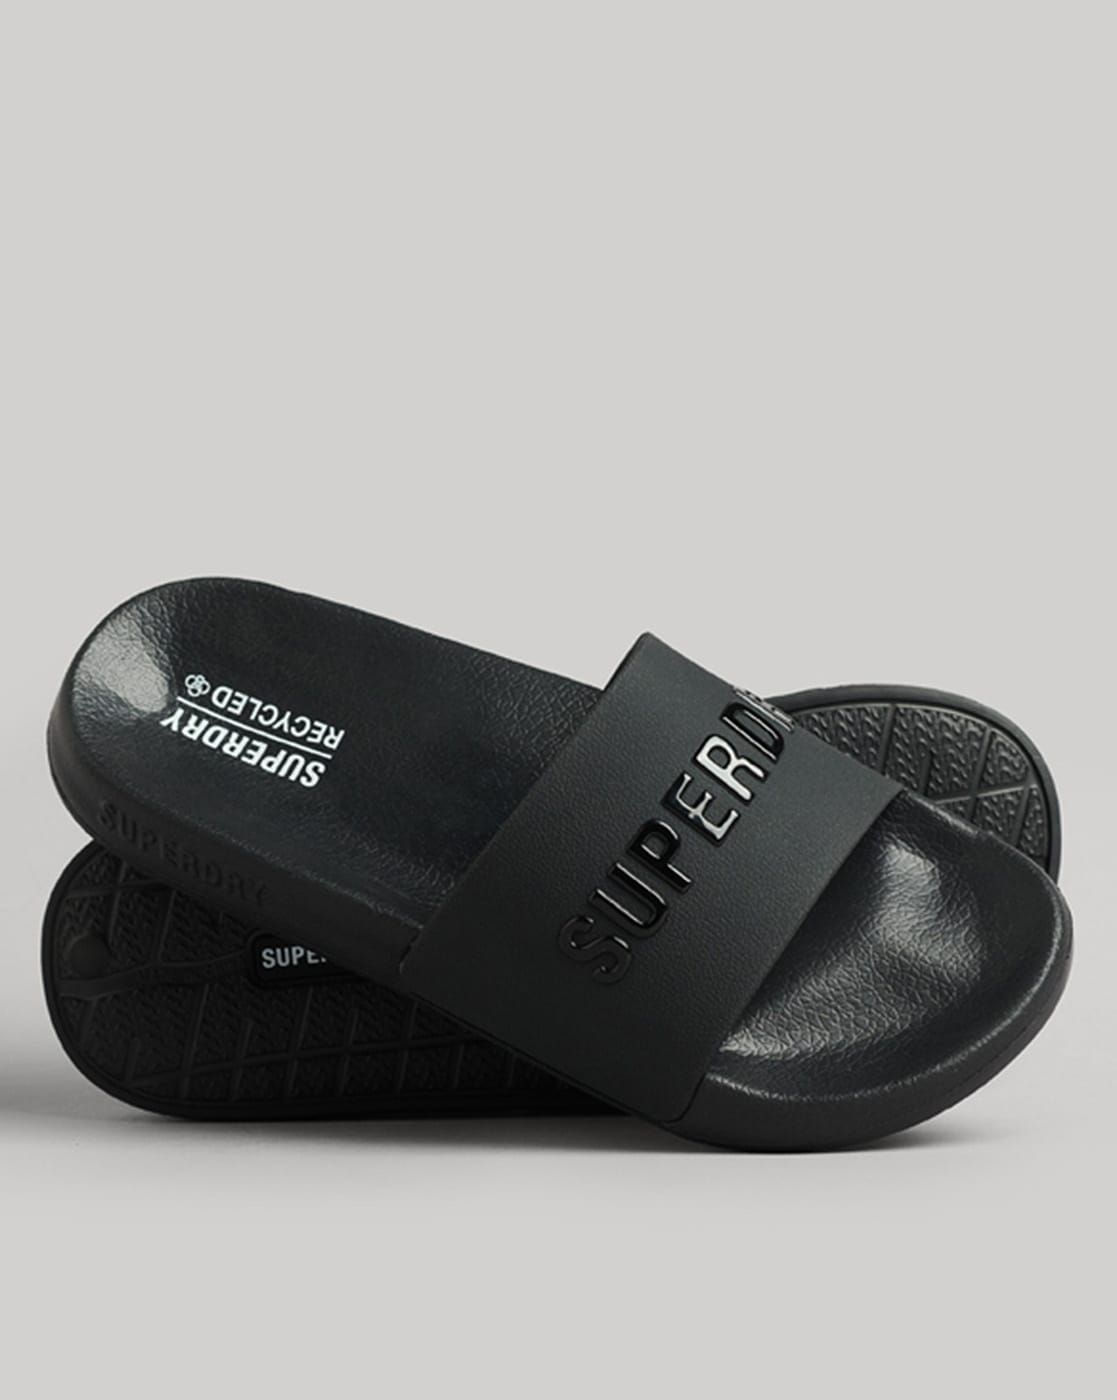 Superdry Mens New Code Core Flip Flops Sliders Sandals Black White Navy  Blue | eBay